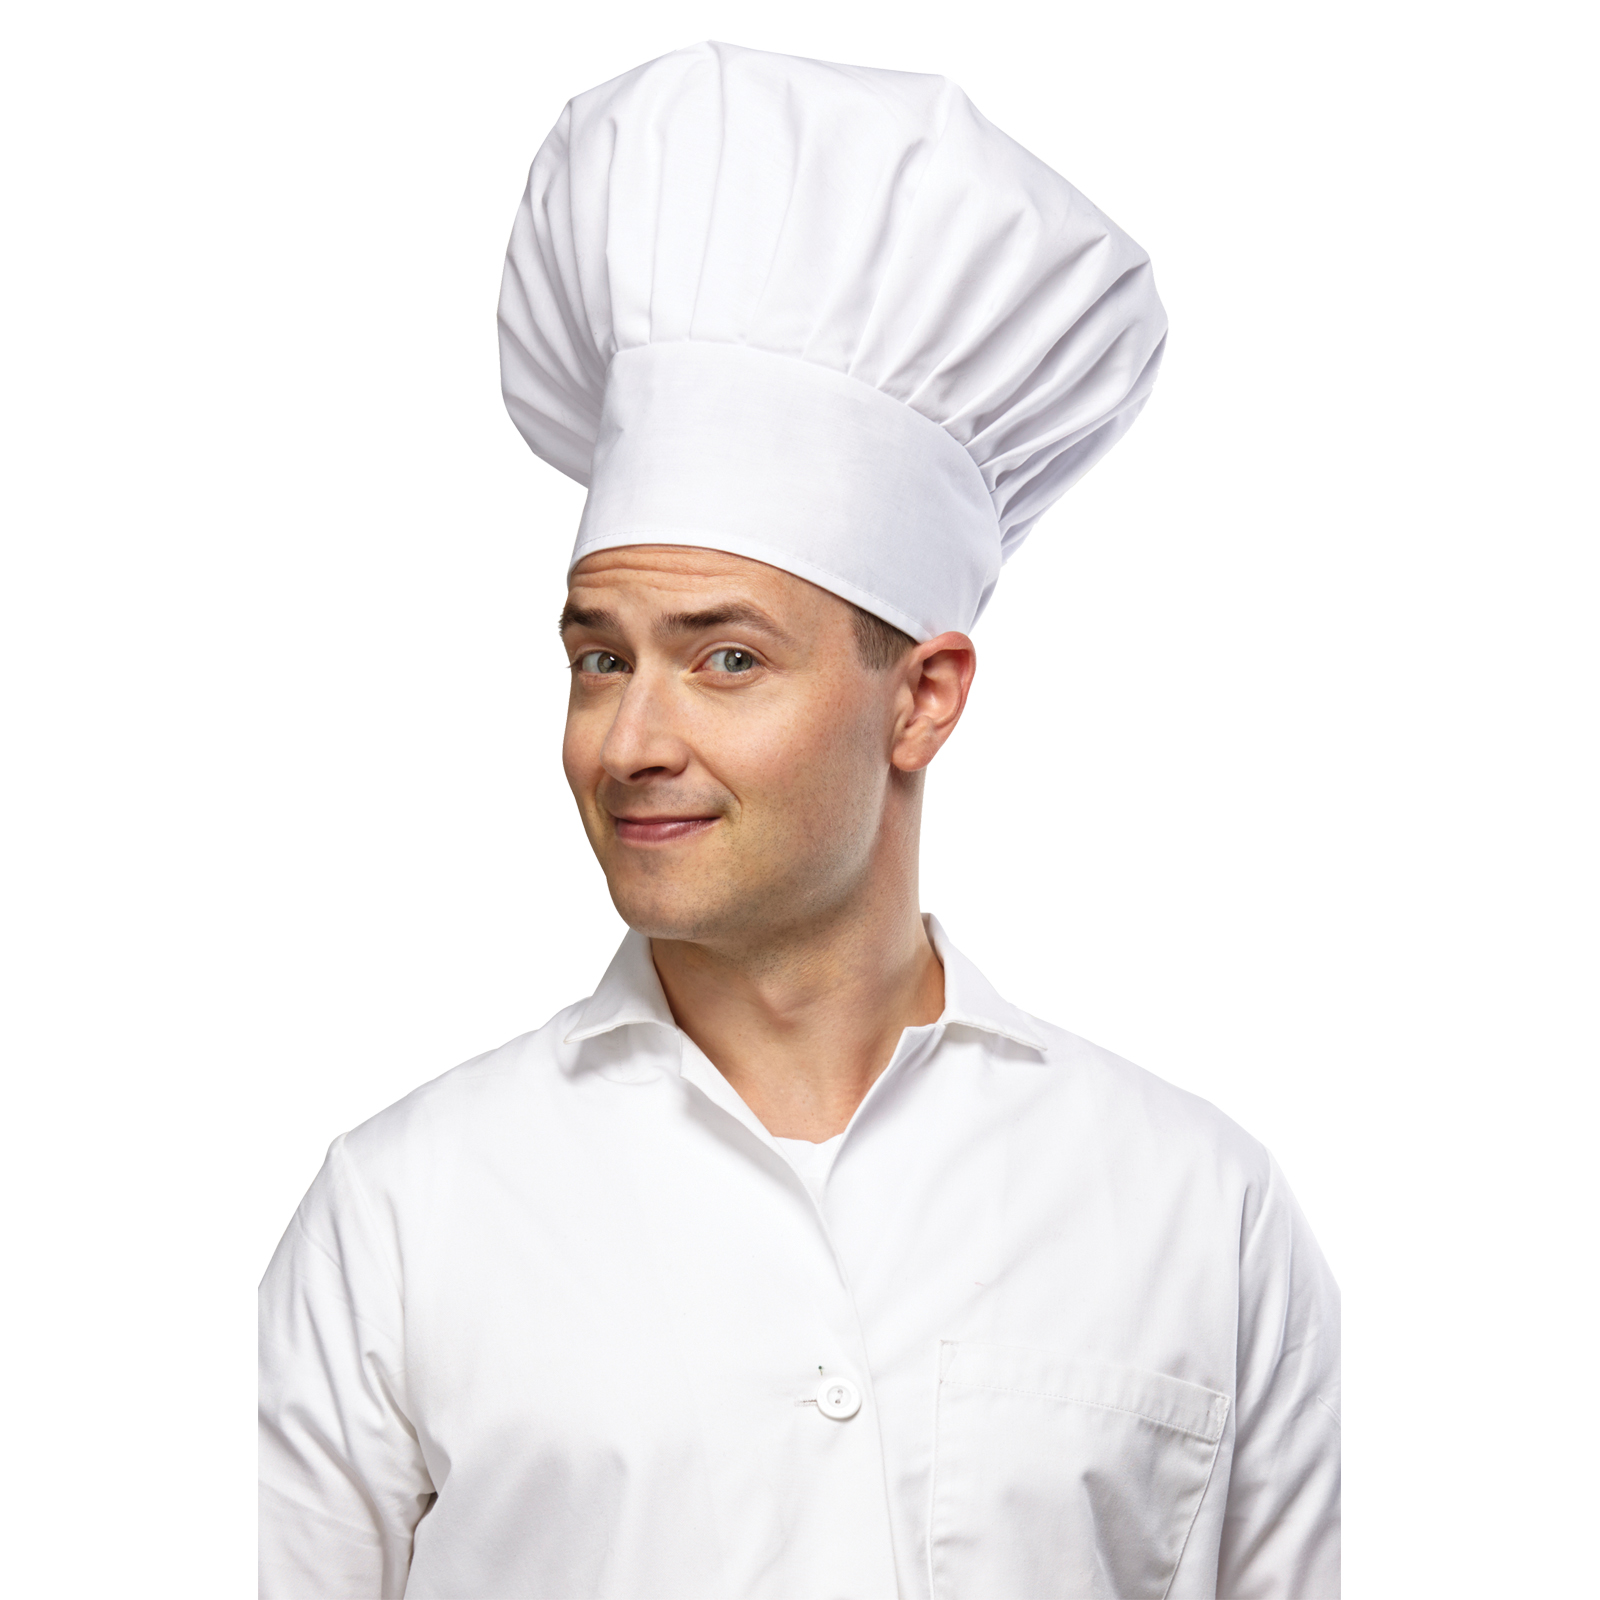 Chef's Hat Costume Accessory